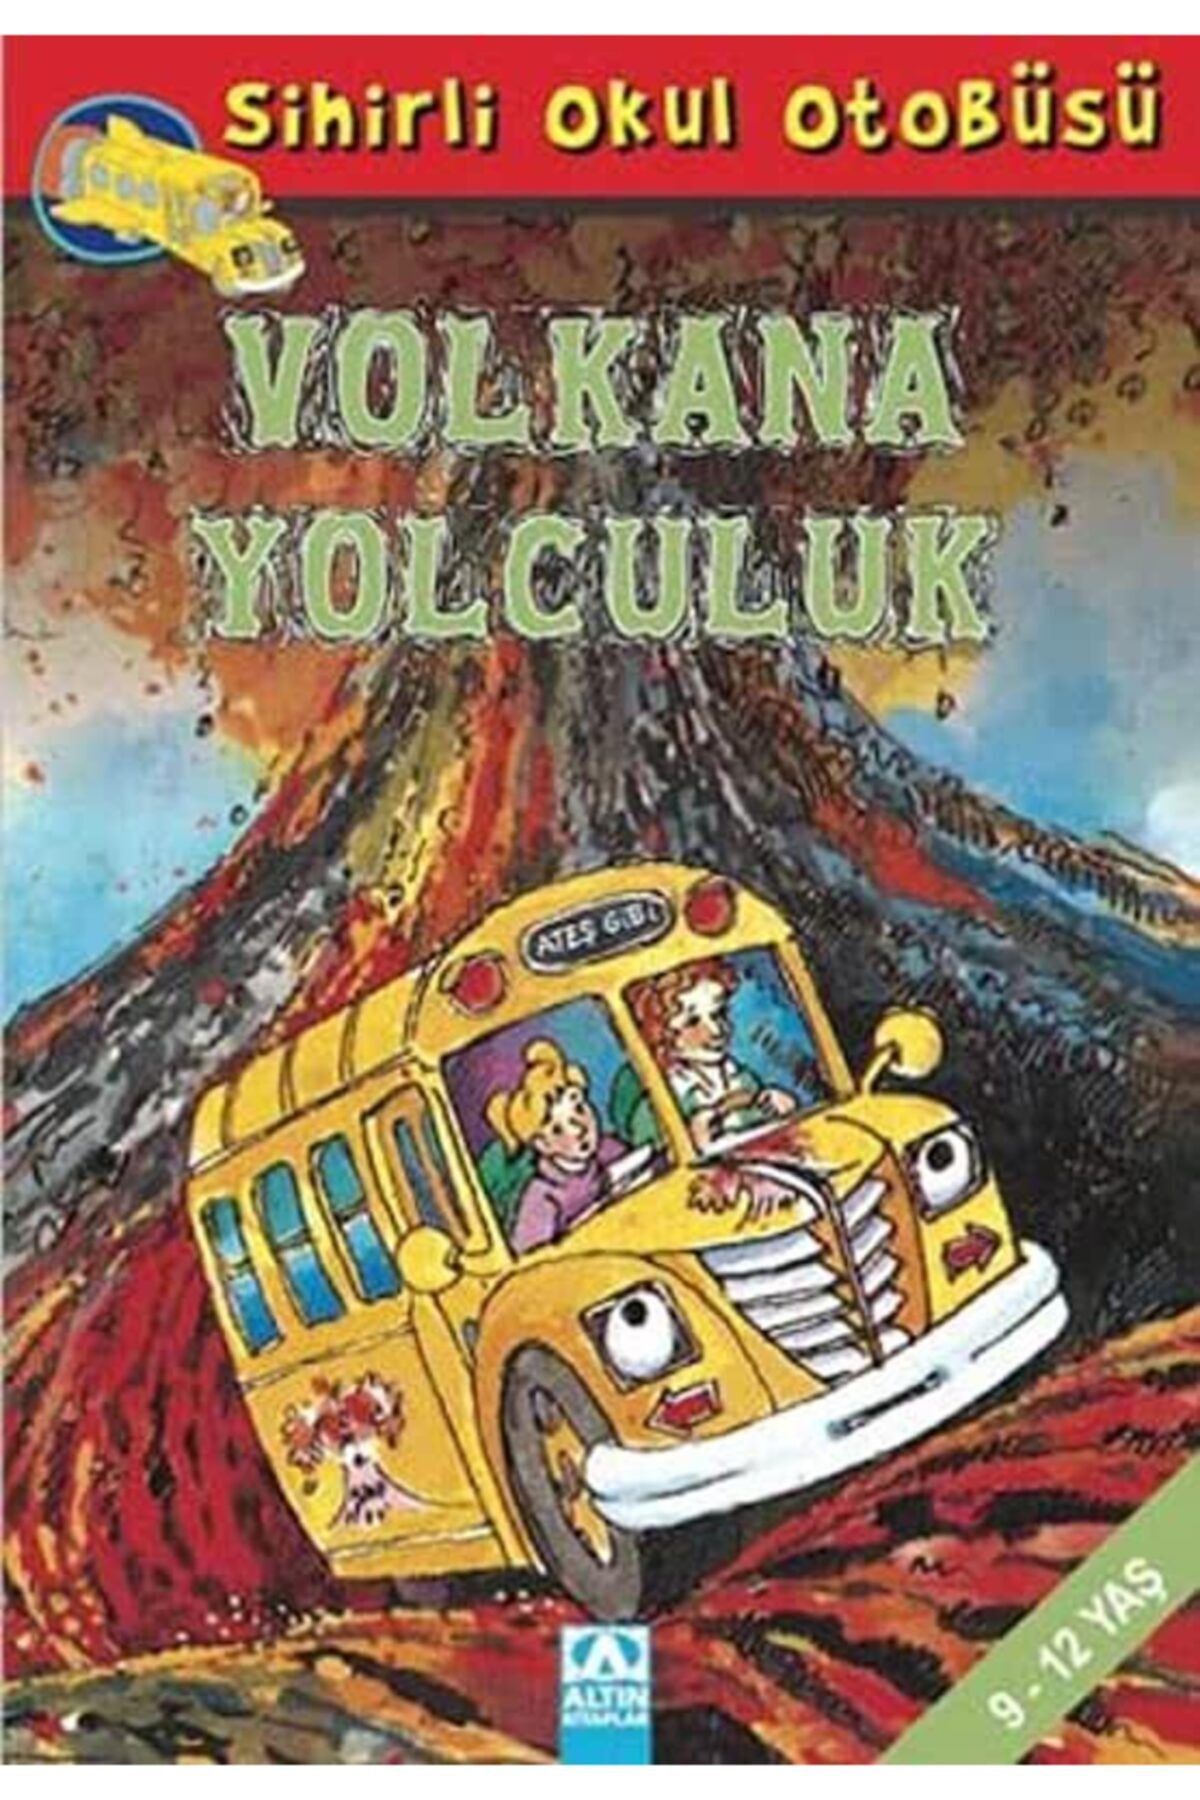 Altın Kitaplar Sihirli Okul Otobüsü- Volkana Yolculuk